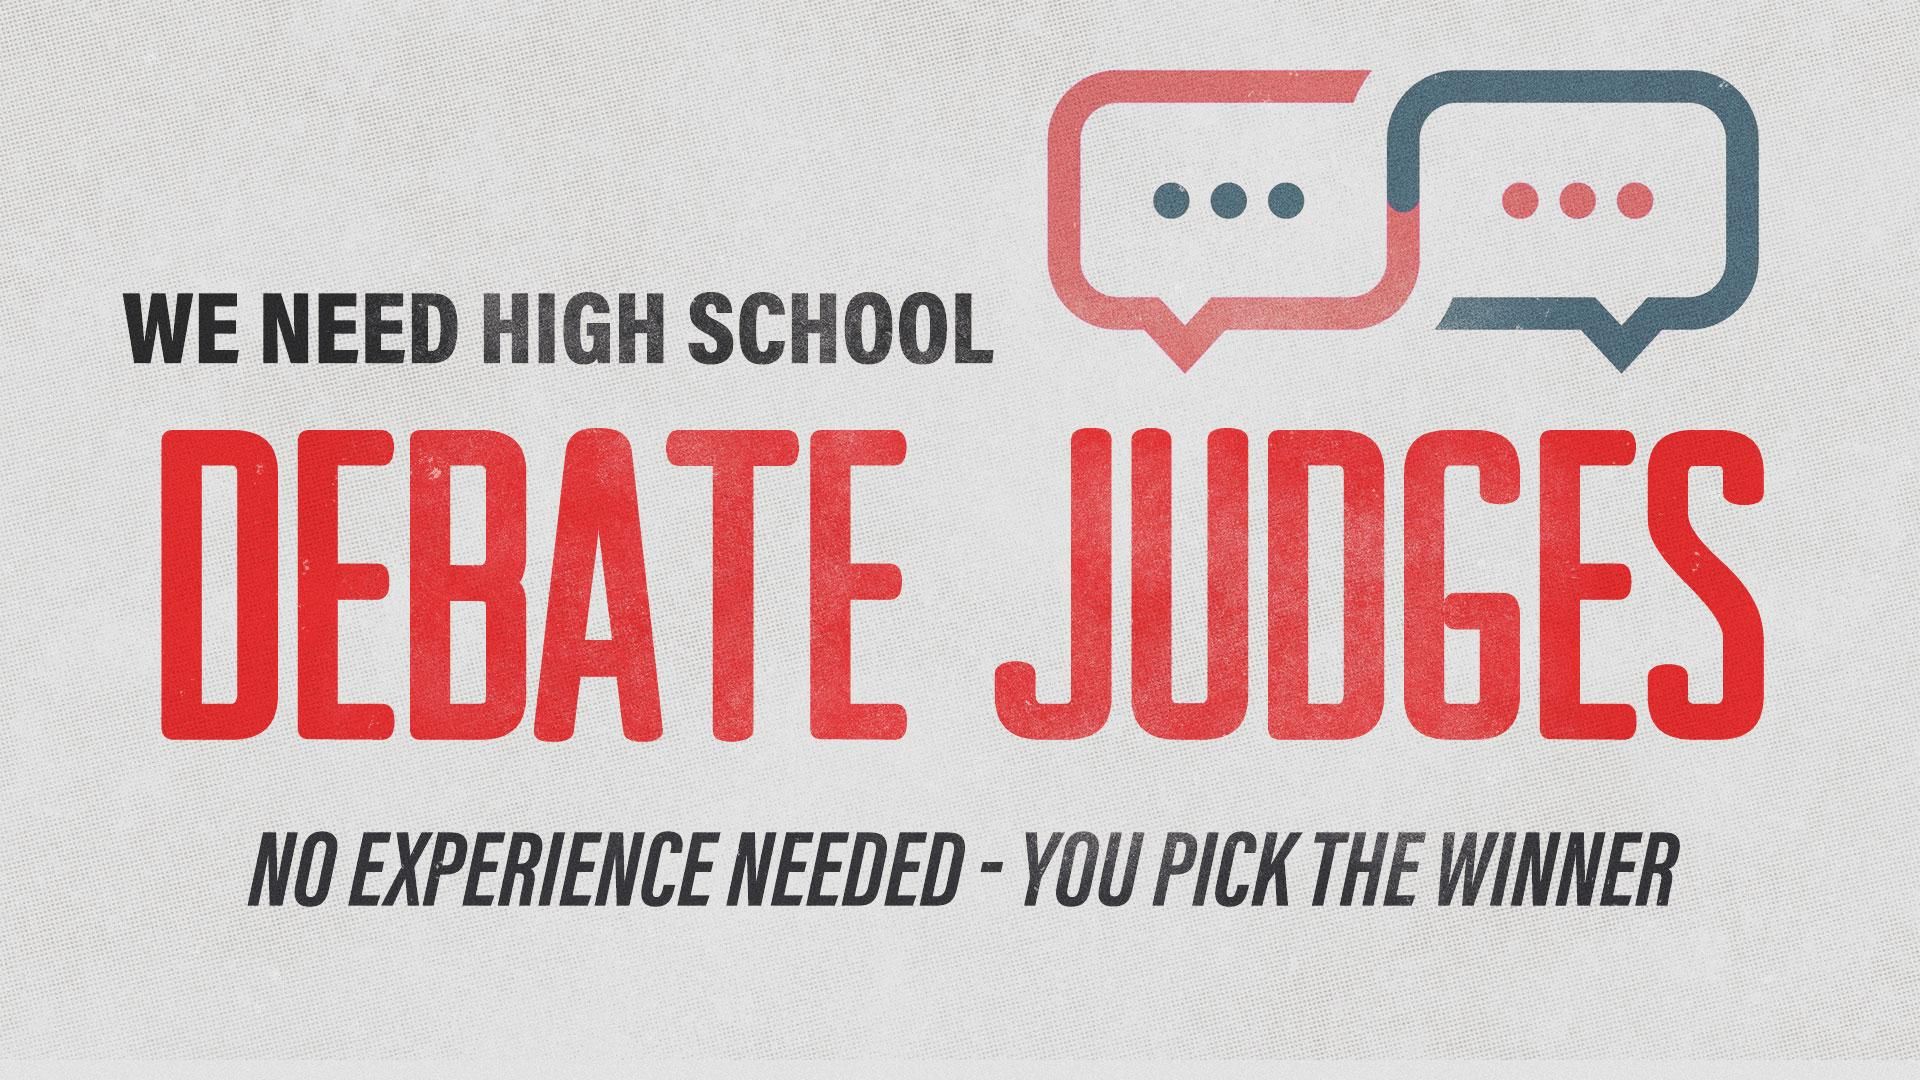 Debate Judges